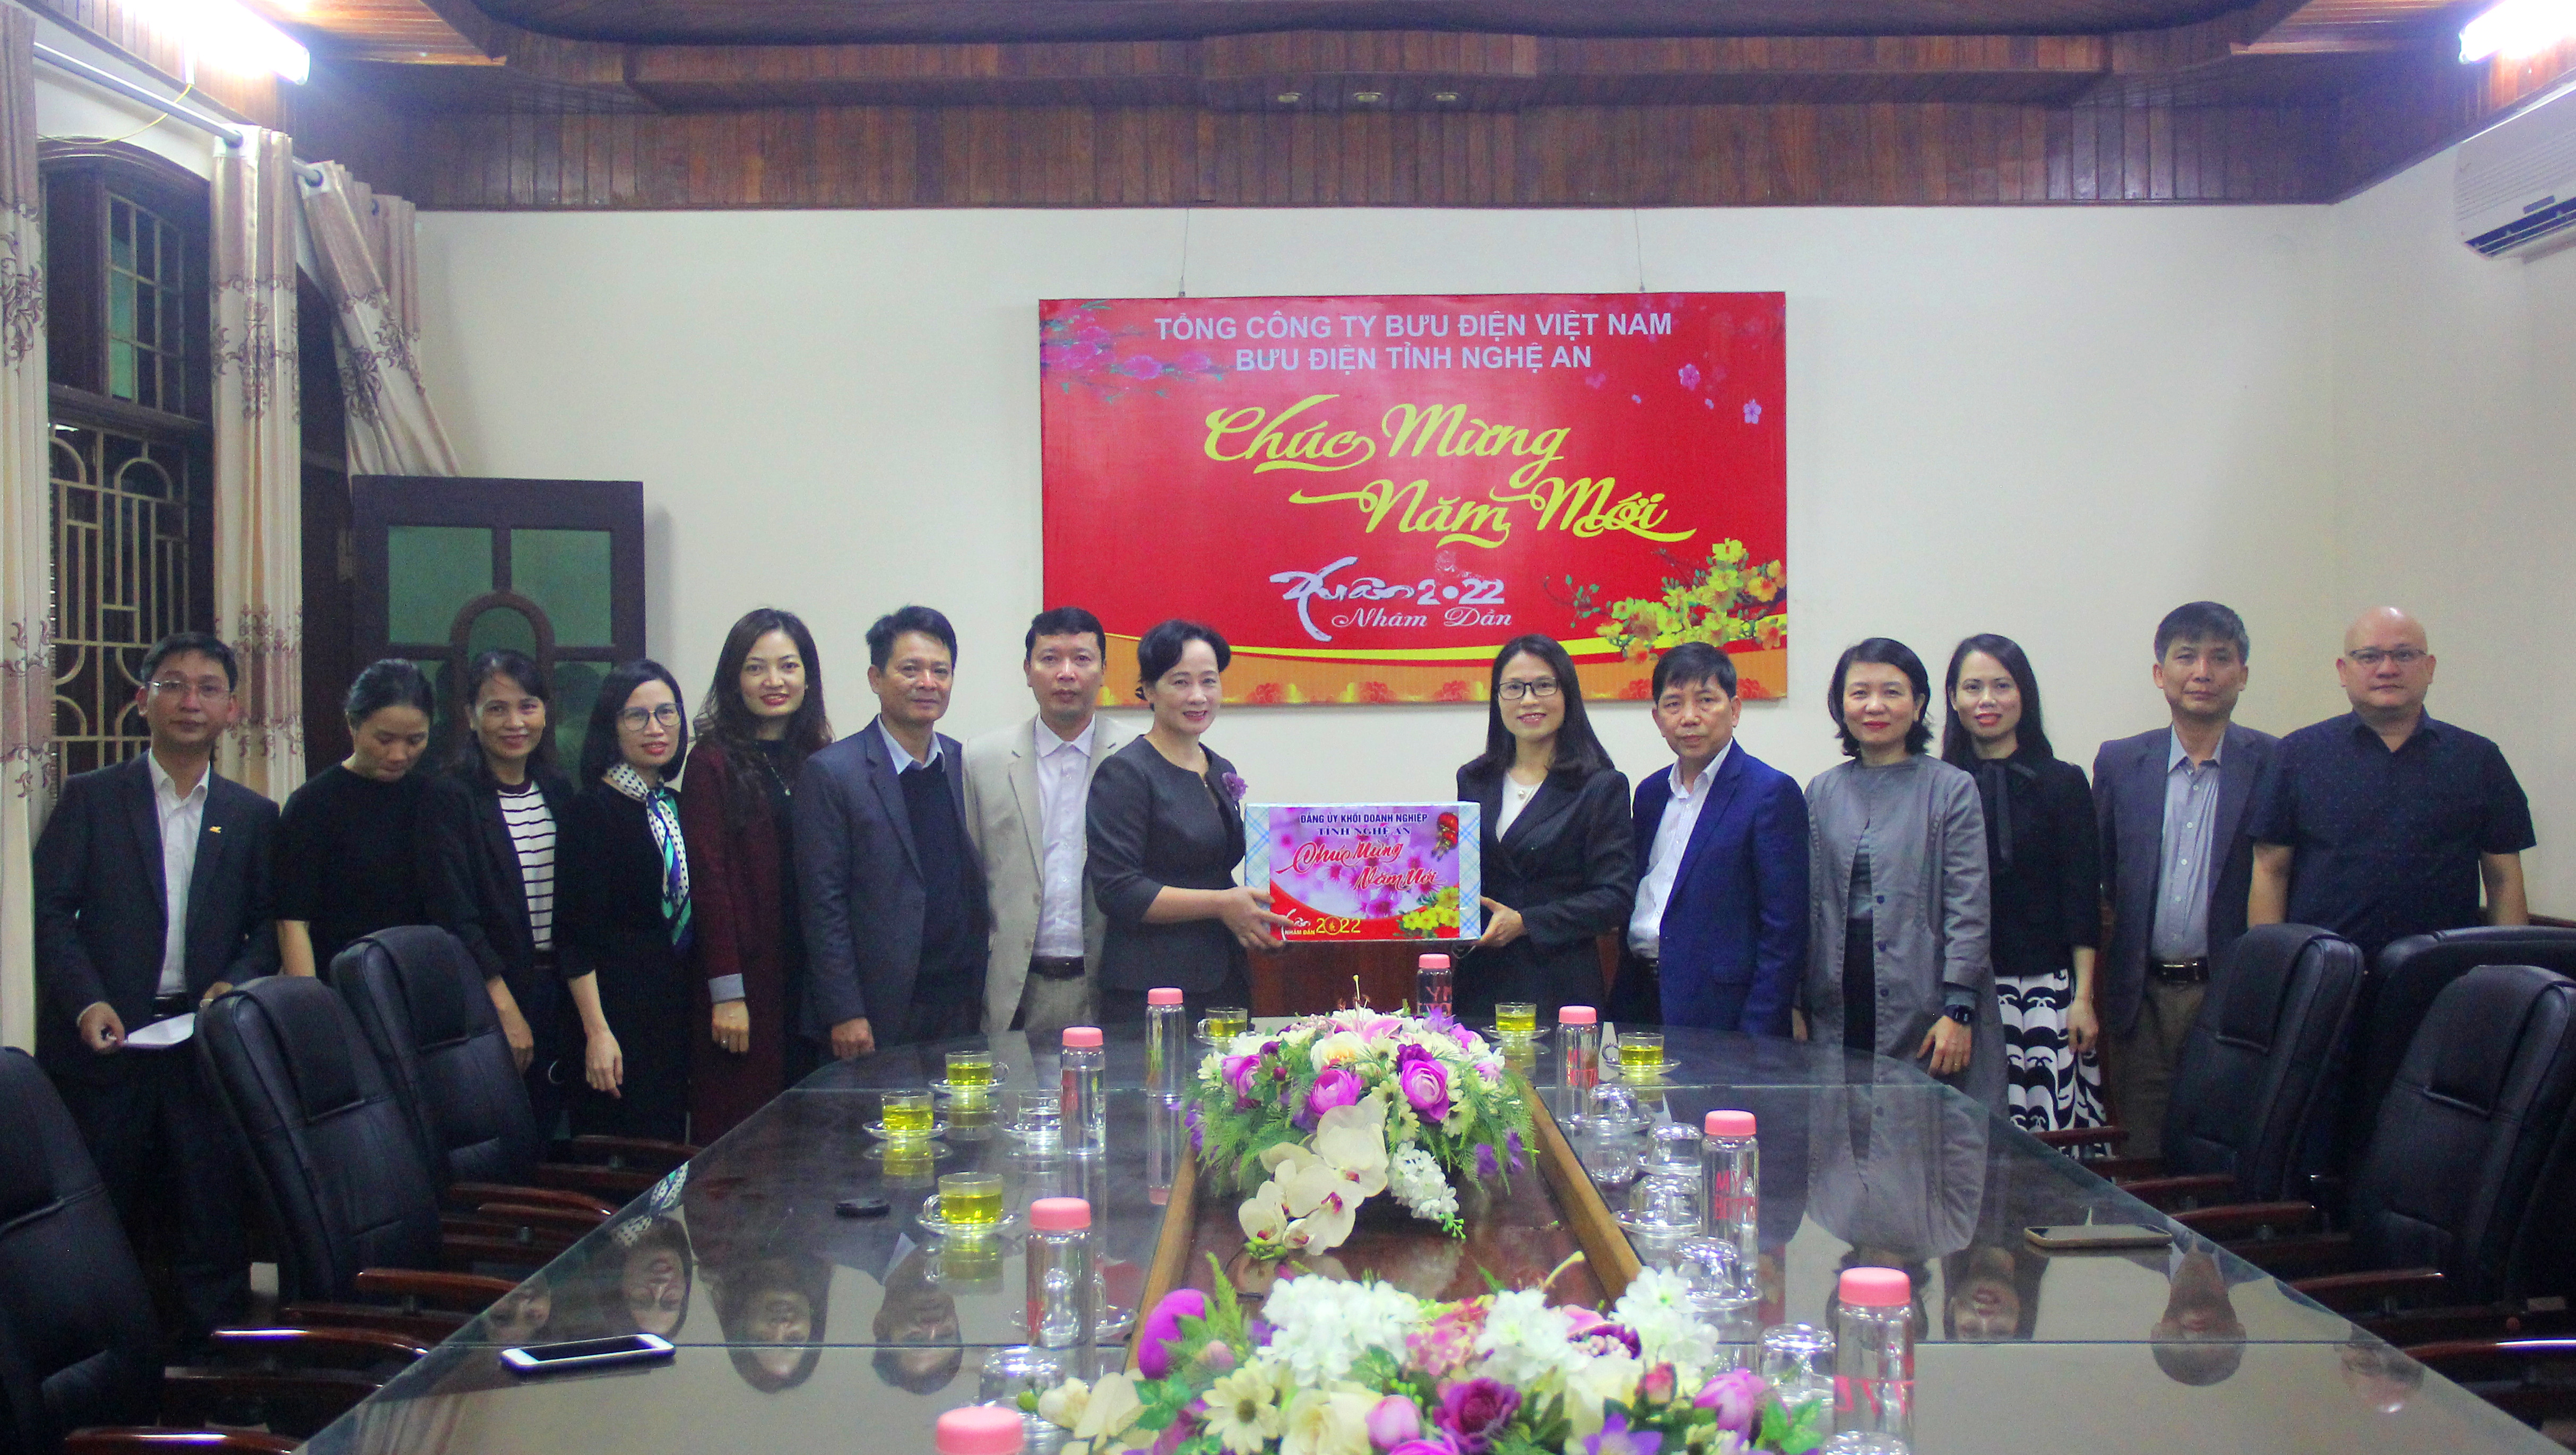 Đồng chí Phan Thị Hoan - Ủy viên BCH Đảng bộ tỉnh, Bí thư Đảng ủy khối tặng quà tại Bưu điện Nghệ An. Ảnh: Khánh Hồng